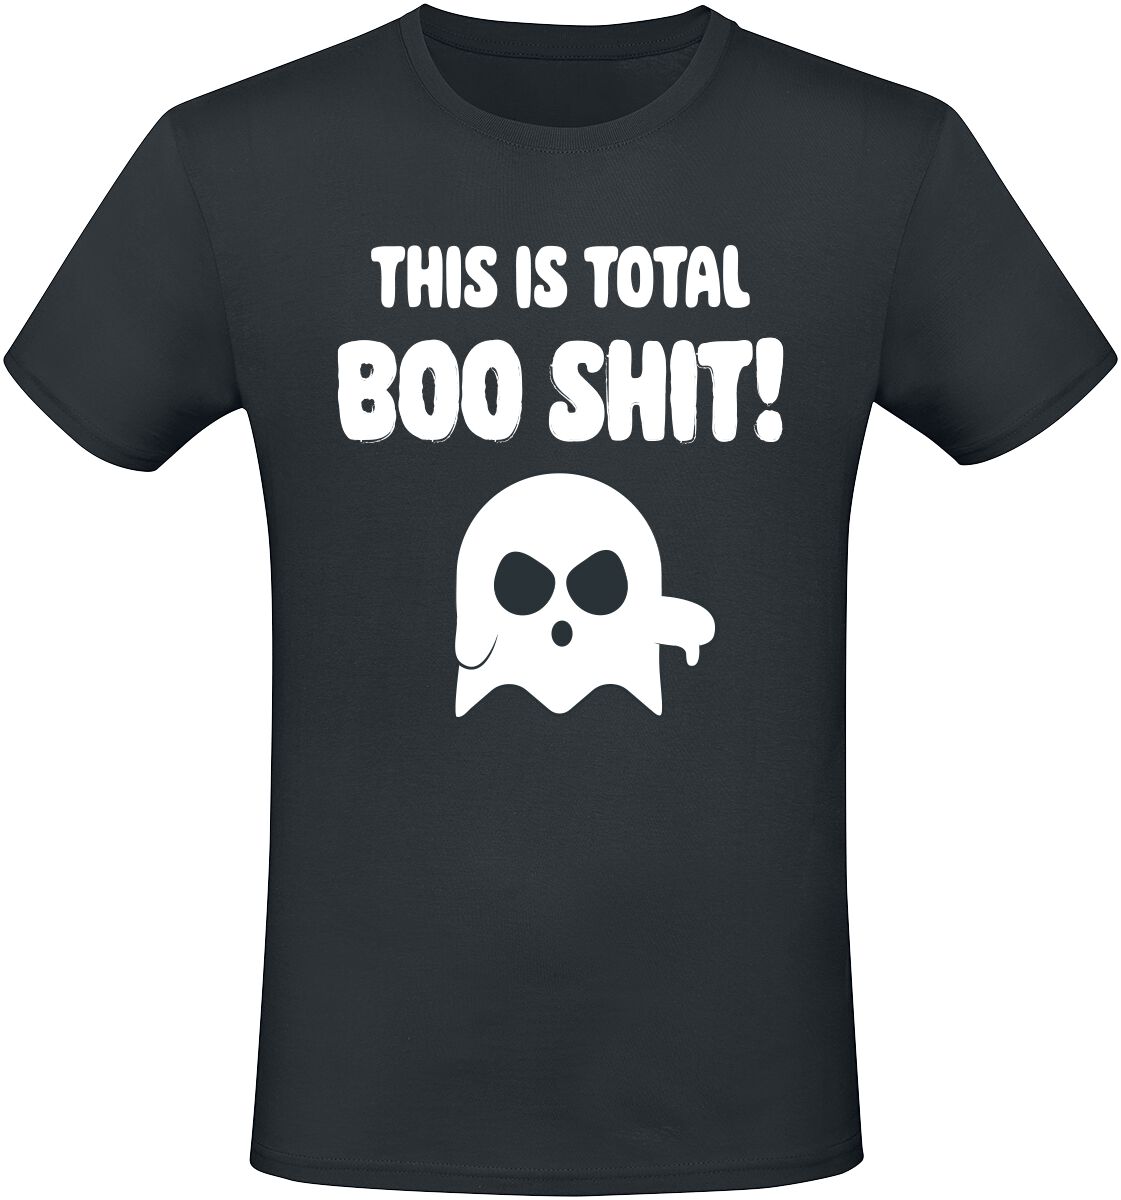 Sprüche T-Shirt - This Is Total Boo Shit! - M bis 3XL - für Männer - Größe 3XL - schwarz